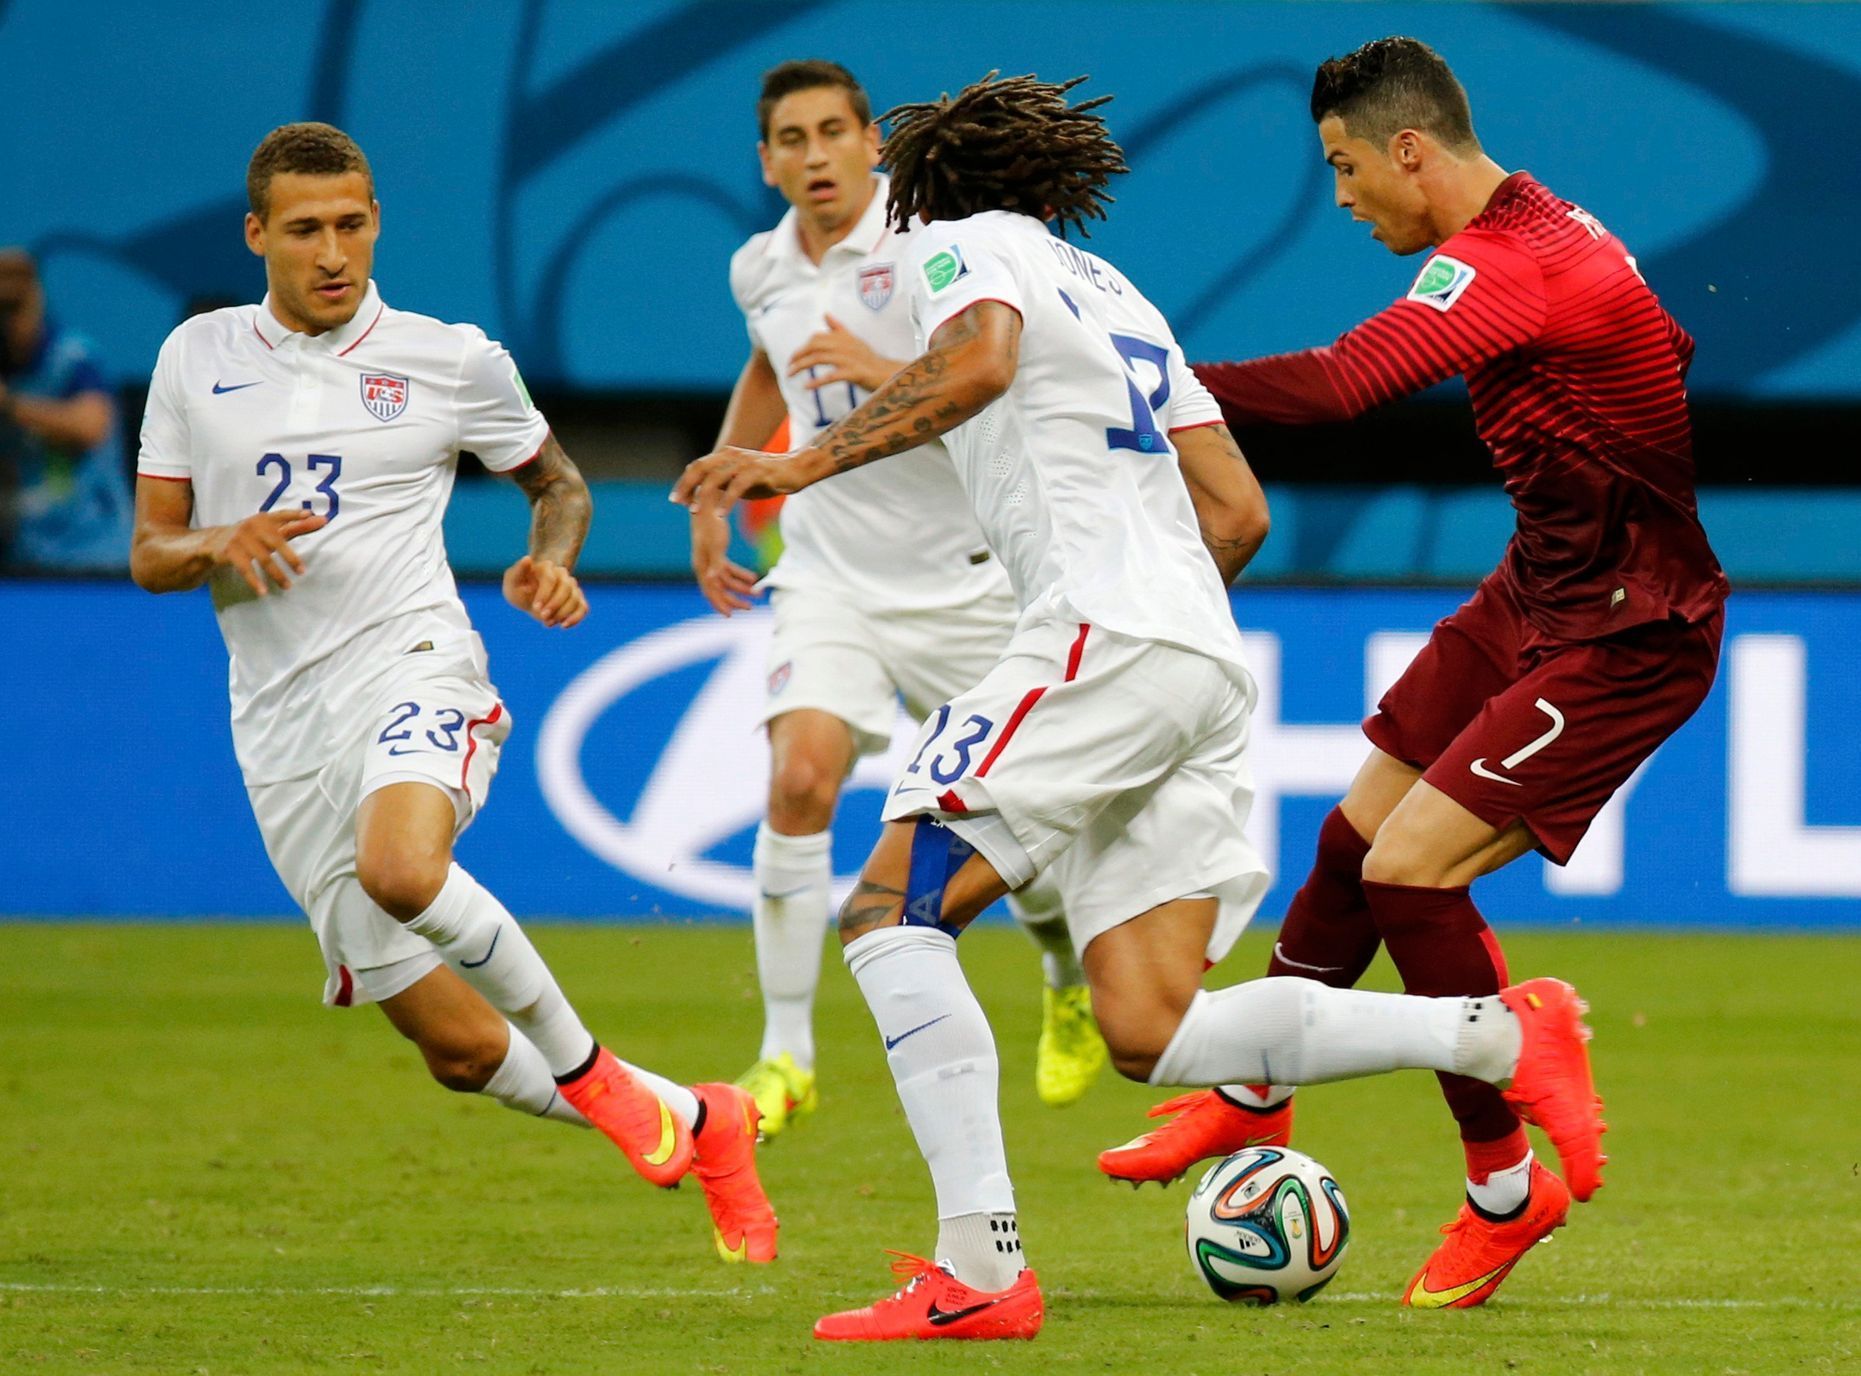 Cristiano Ronaldo v souboji o míč v utkání s Amerikou na MS ve fotbalu 2014